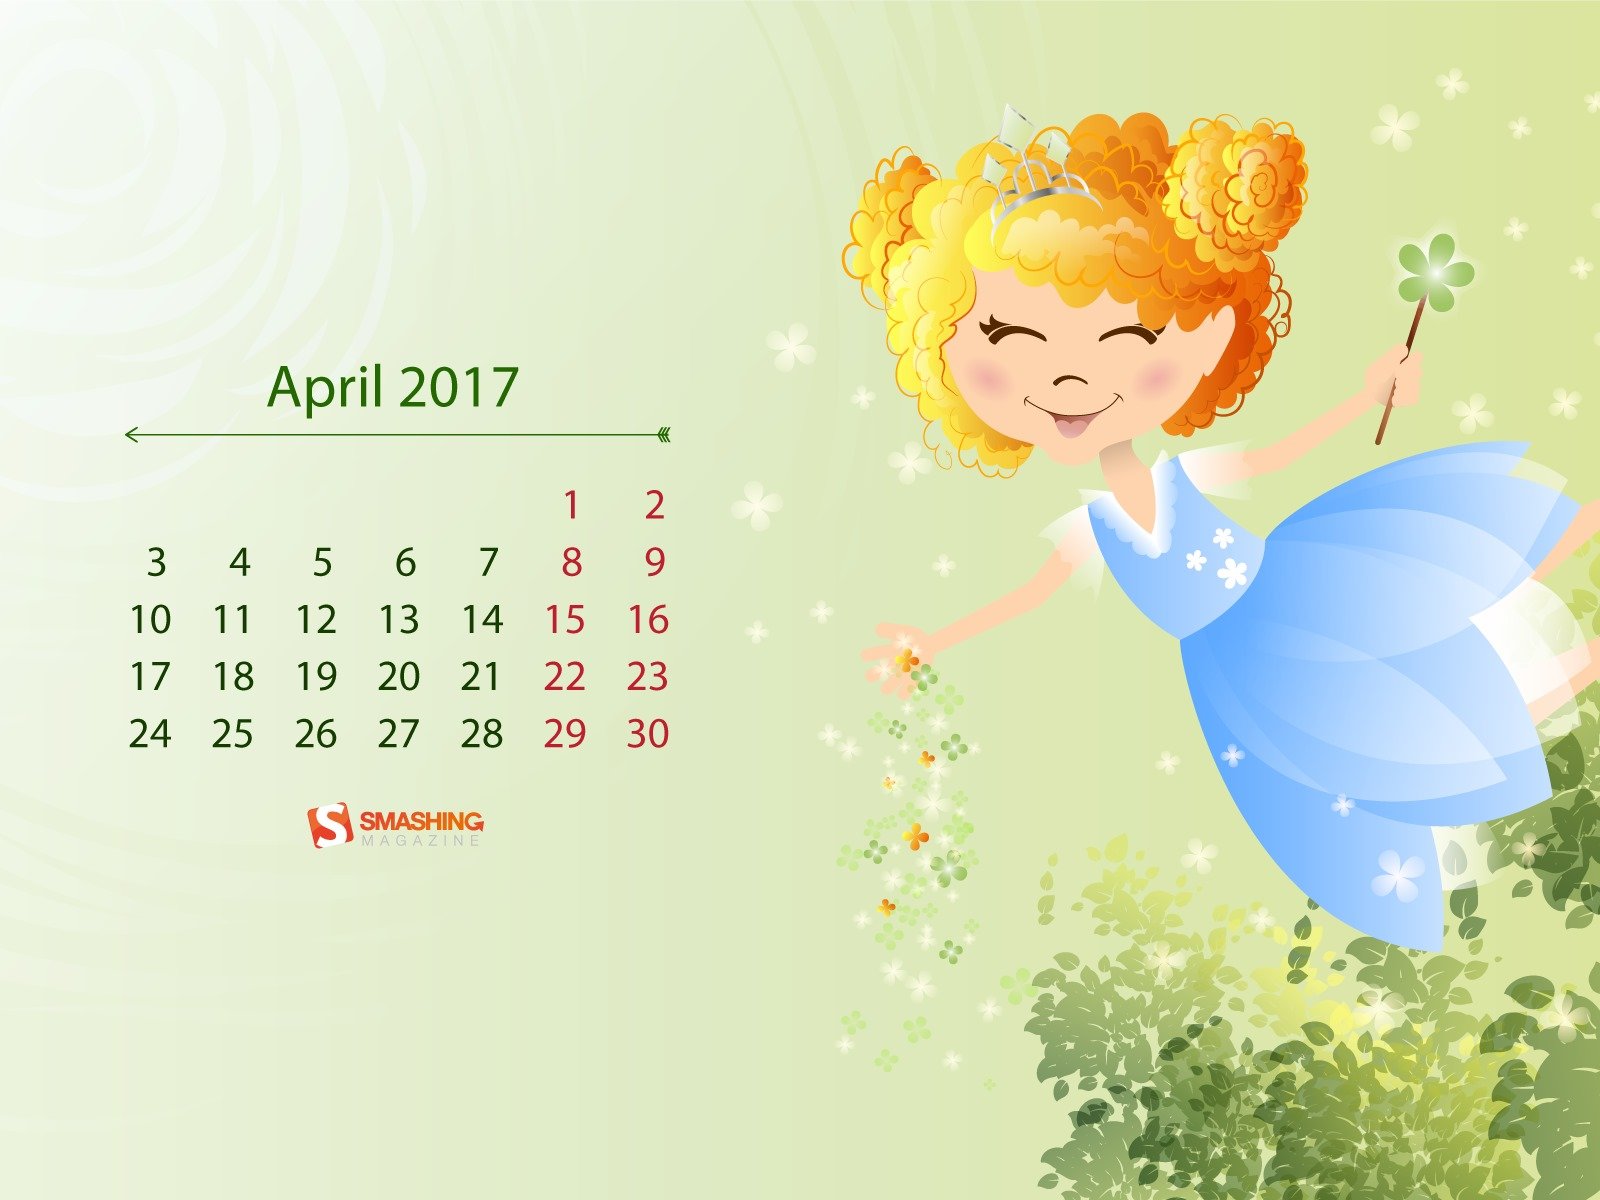 Март календарь обои для рабочего стола